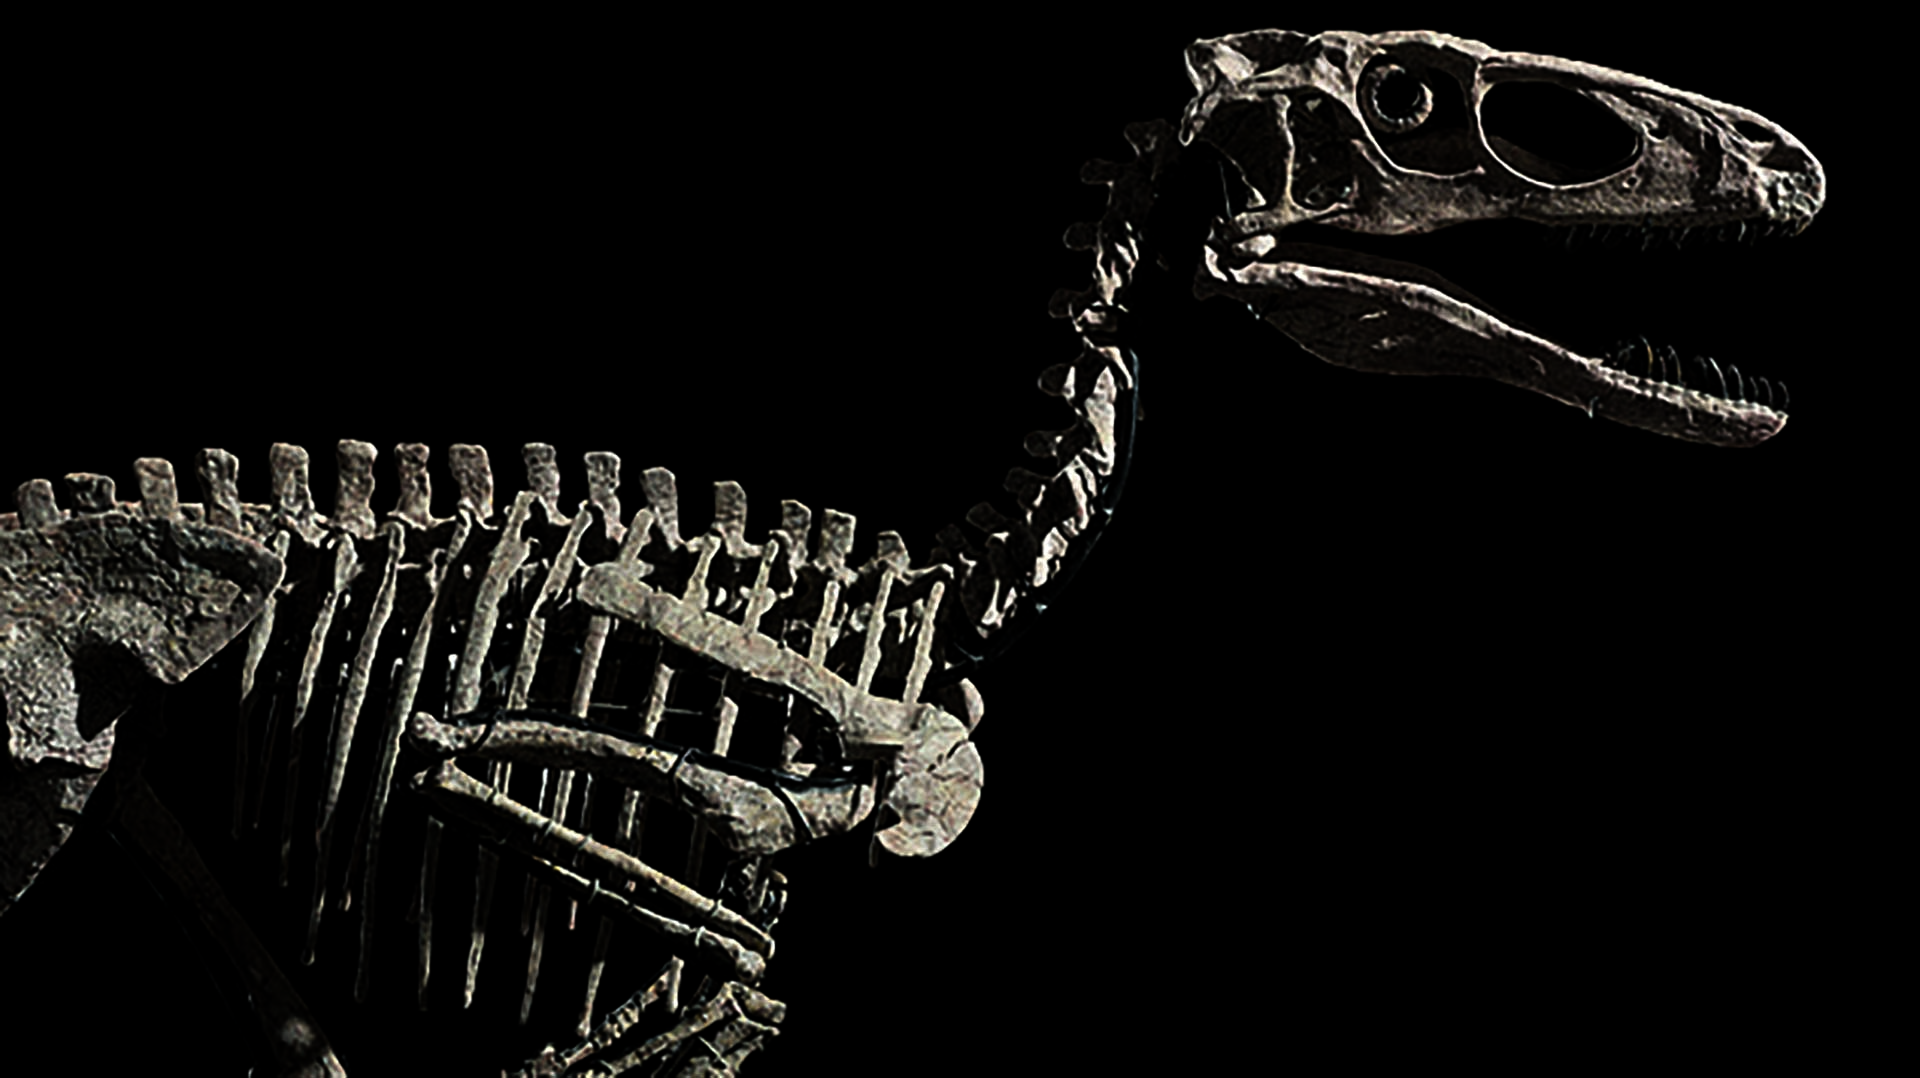 Subastaron por 12,4 millones de dólares el esqueleto del dinosaurio que inspiró a los velociraptors de Jurassic Park